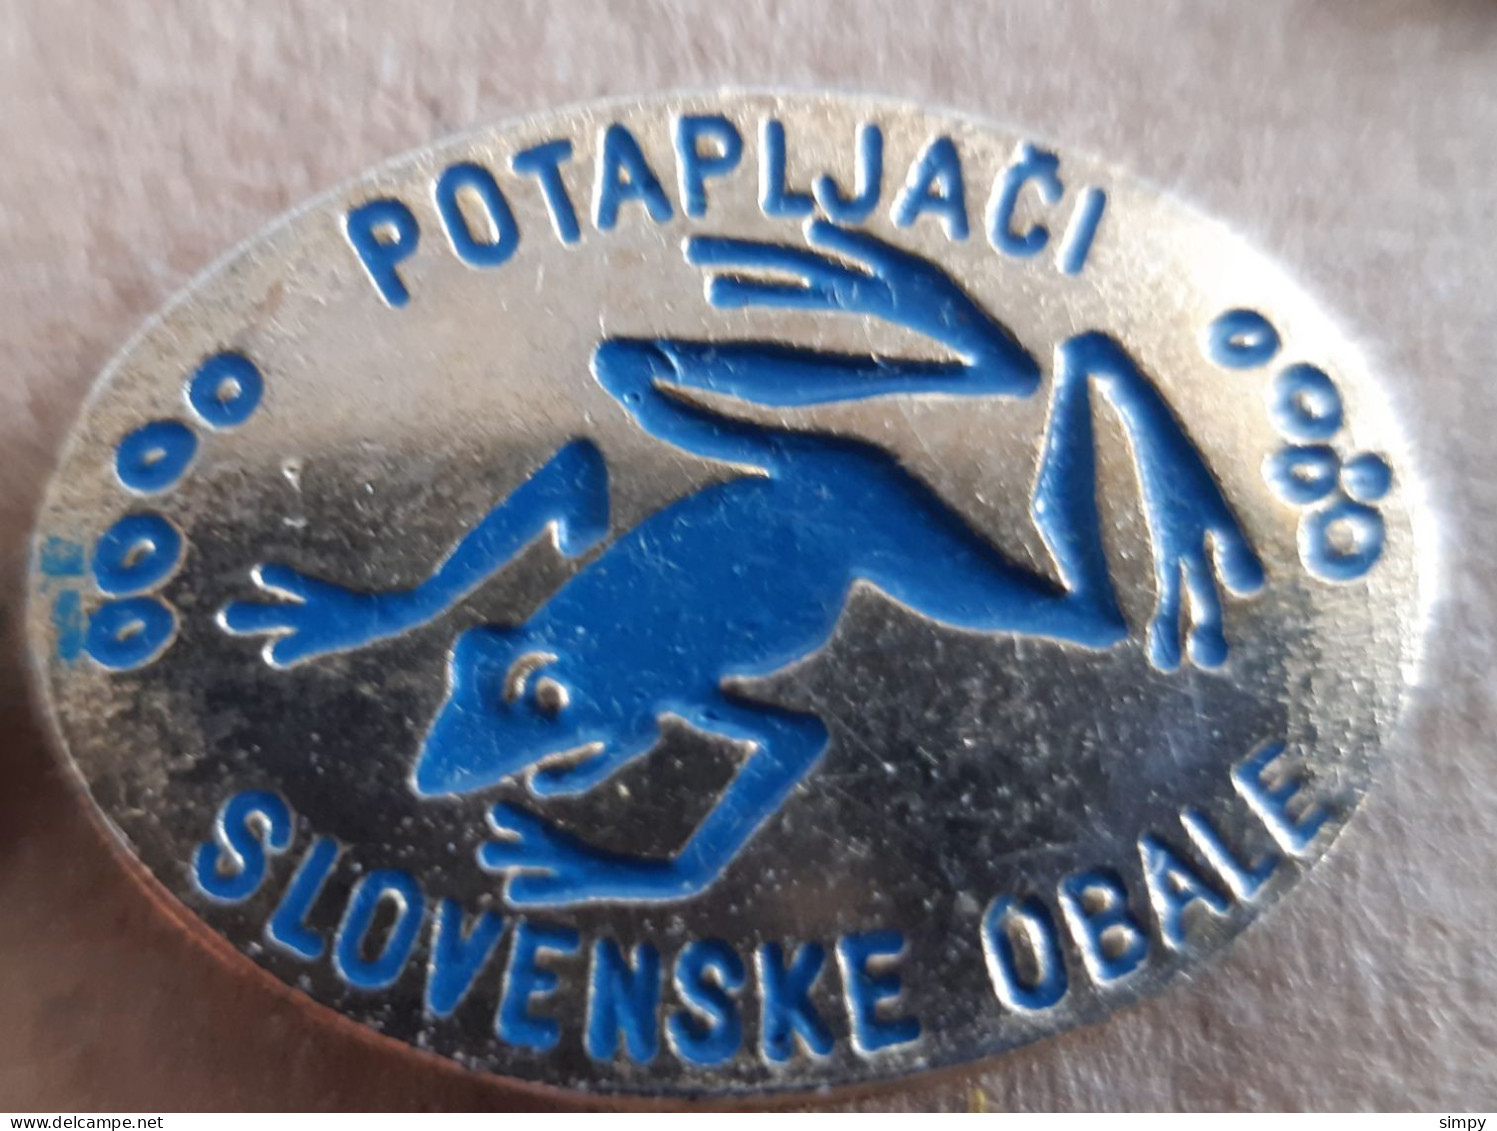 Scuba Diving Club Potapljaci Slovenske Obale Underwater Diving Frog Slovenia Pins - Natation